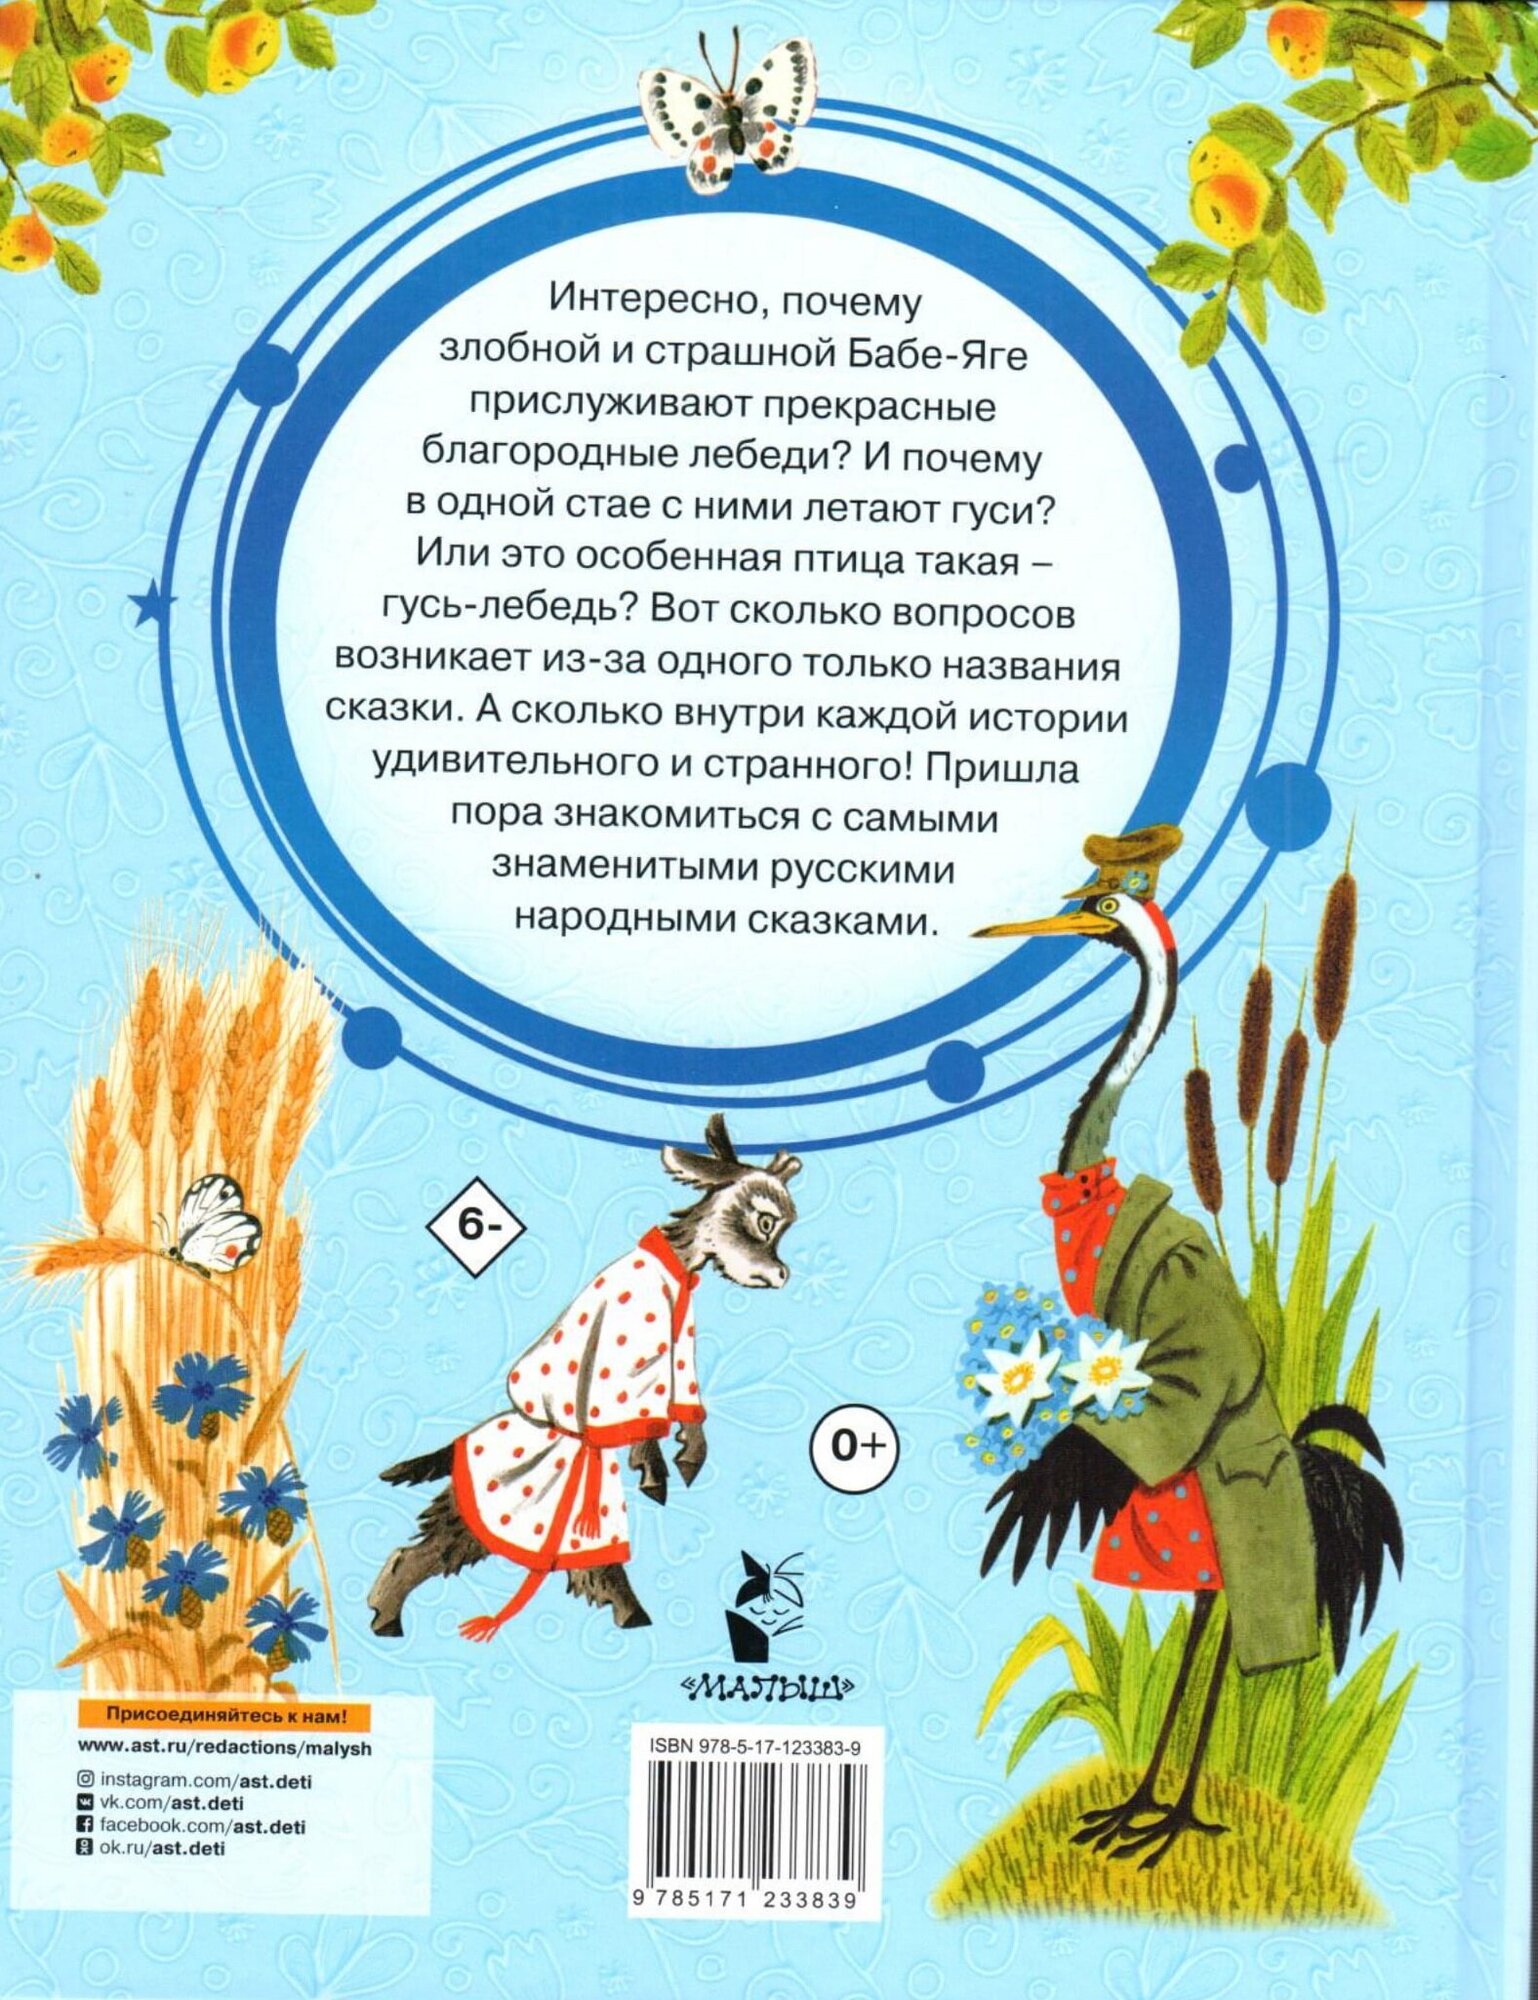 Гуси-лебеди. Русские народные сказки о животных - фото №5